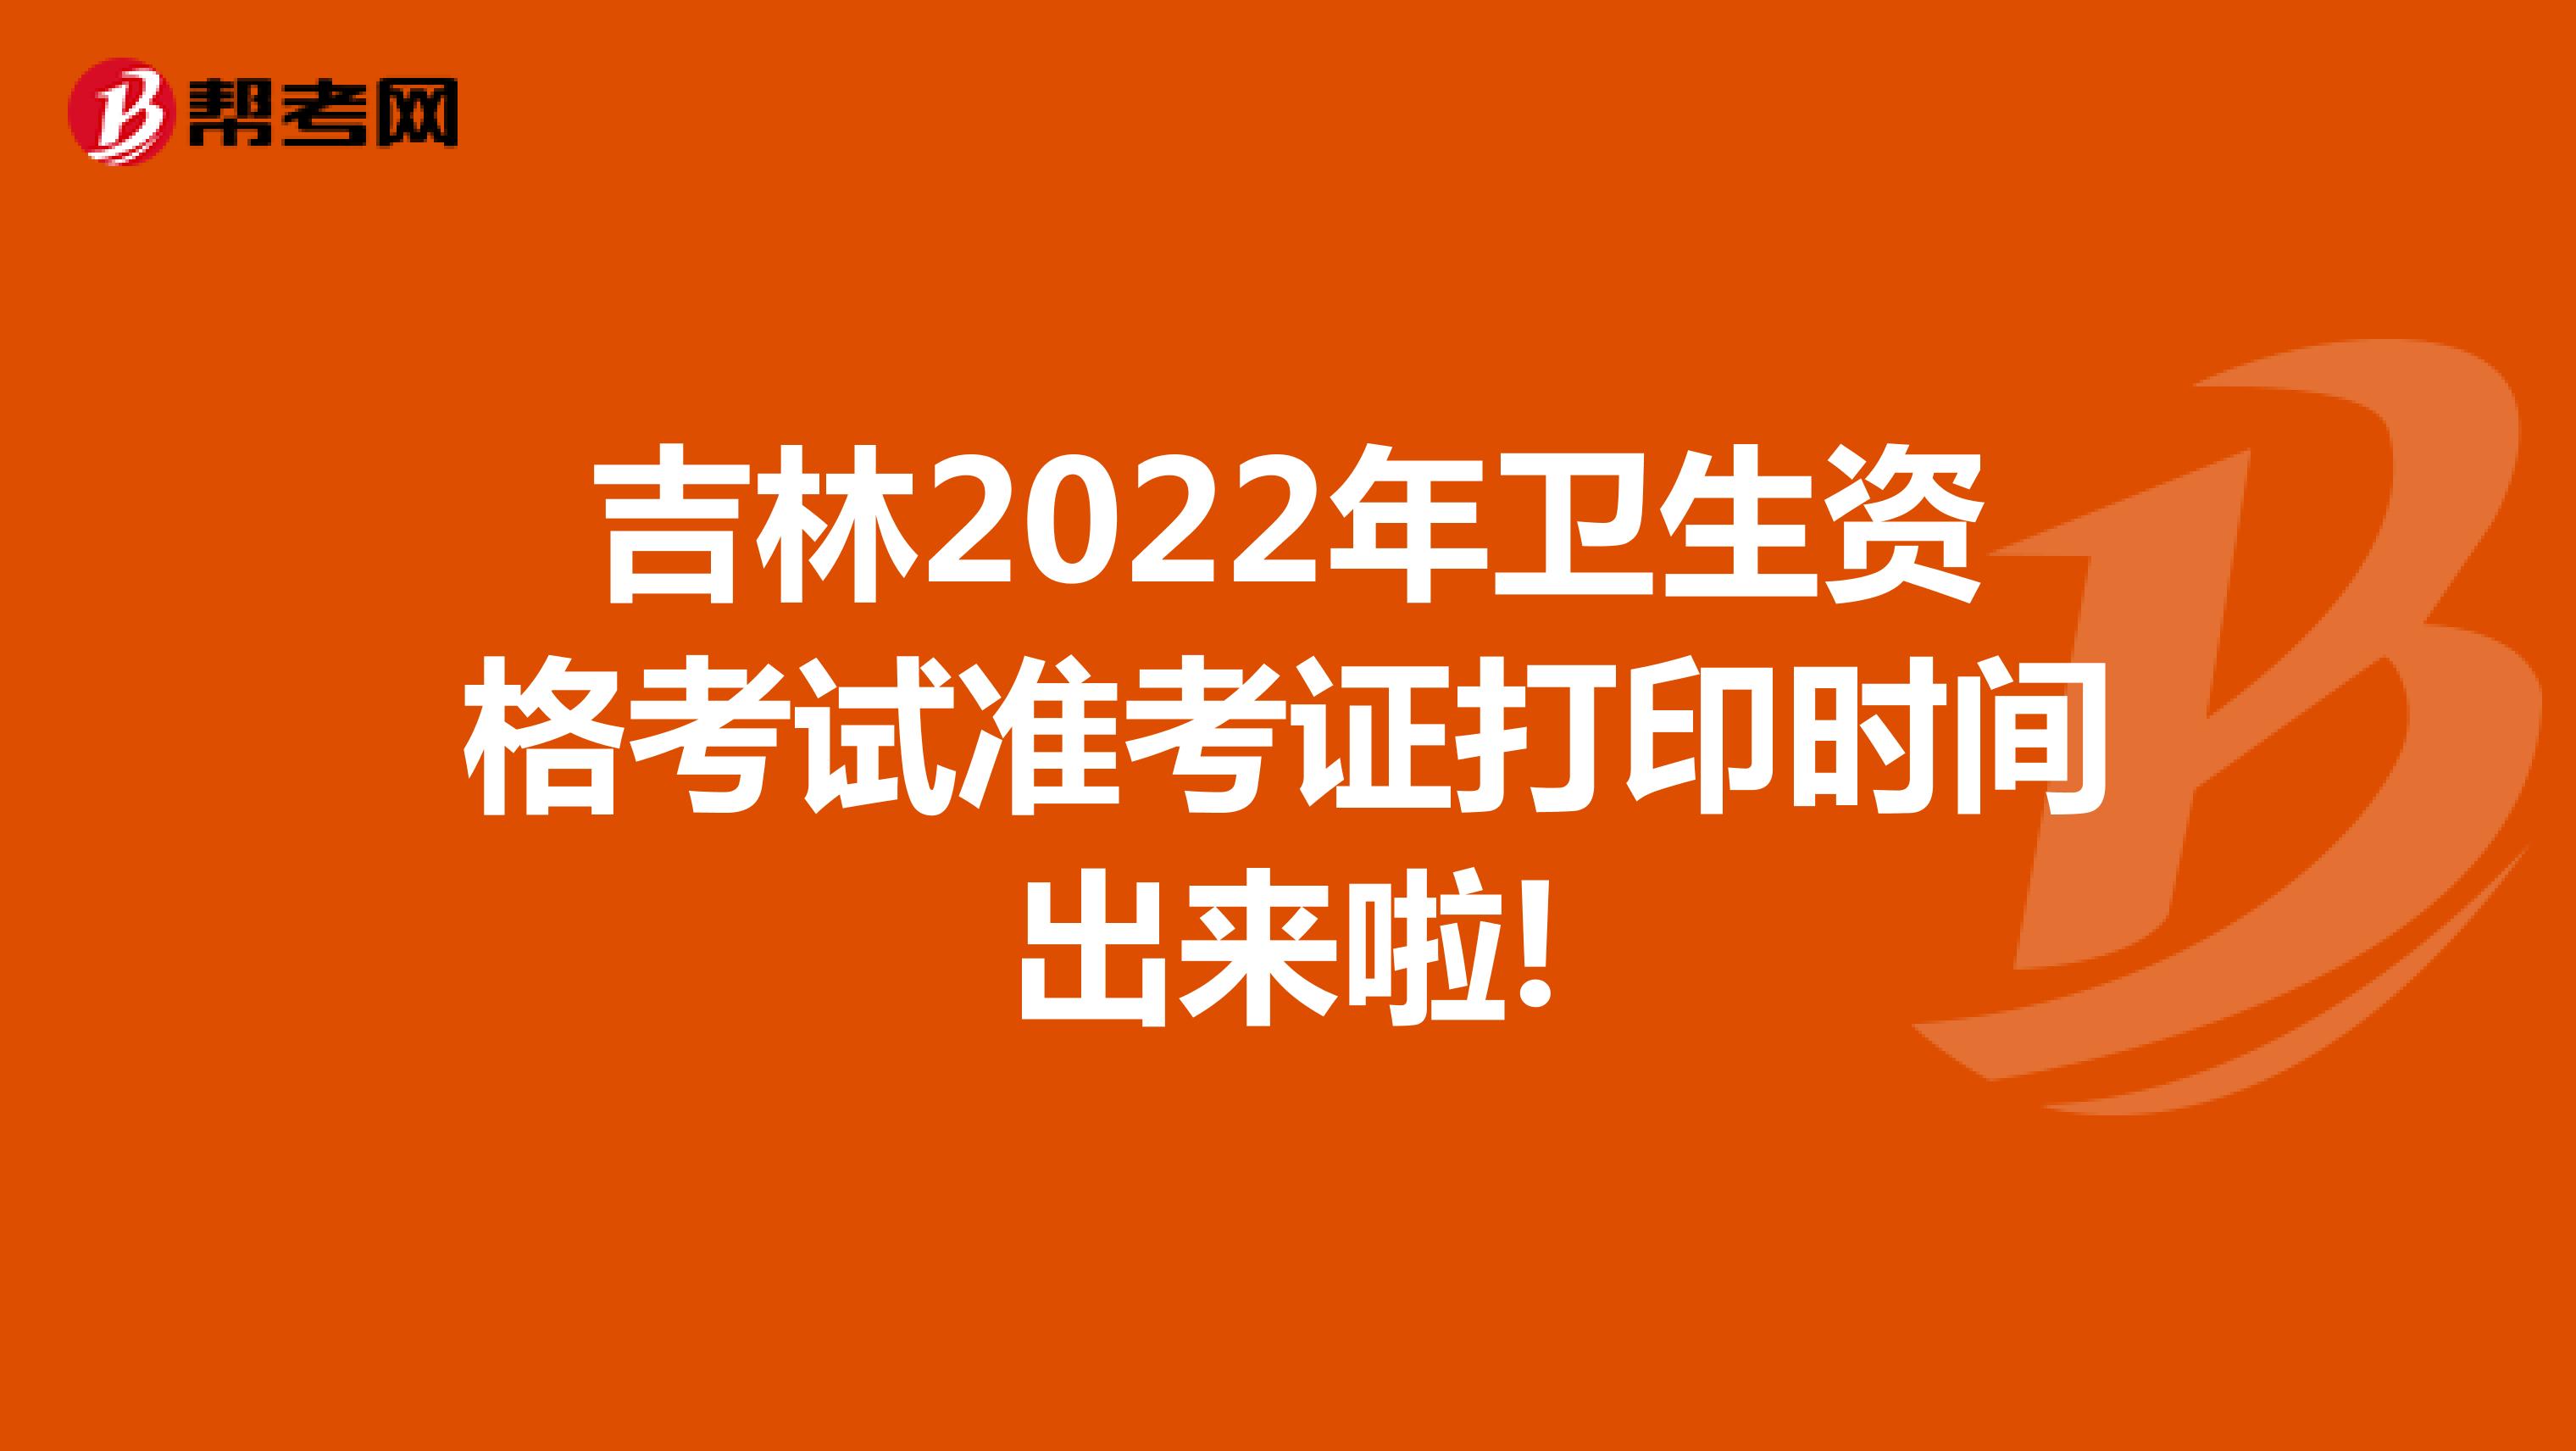 吉林2022年卫生资格考试准考证打印时间出来啦!